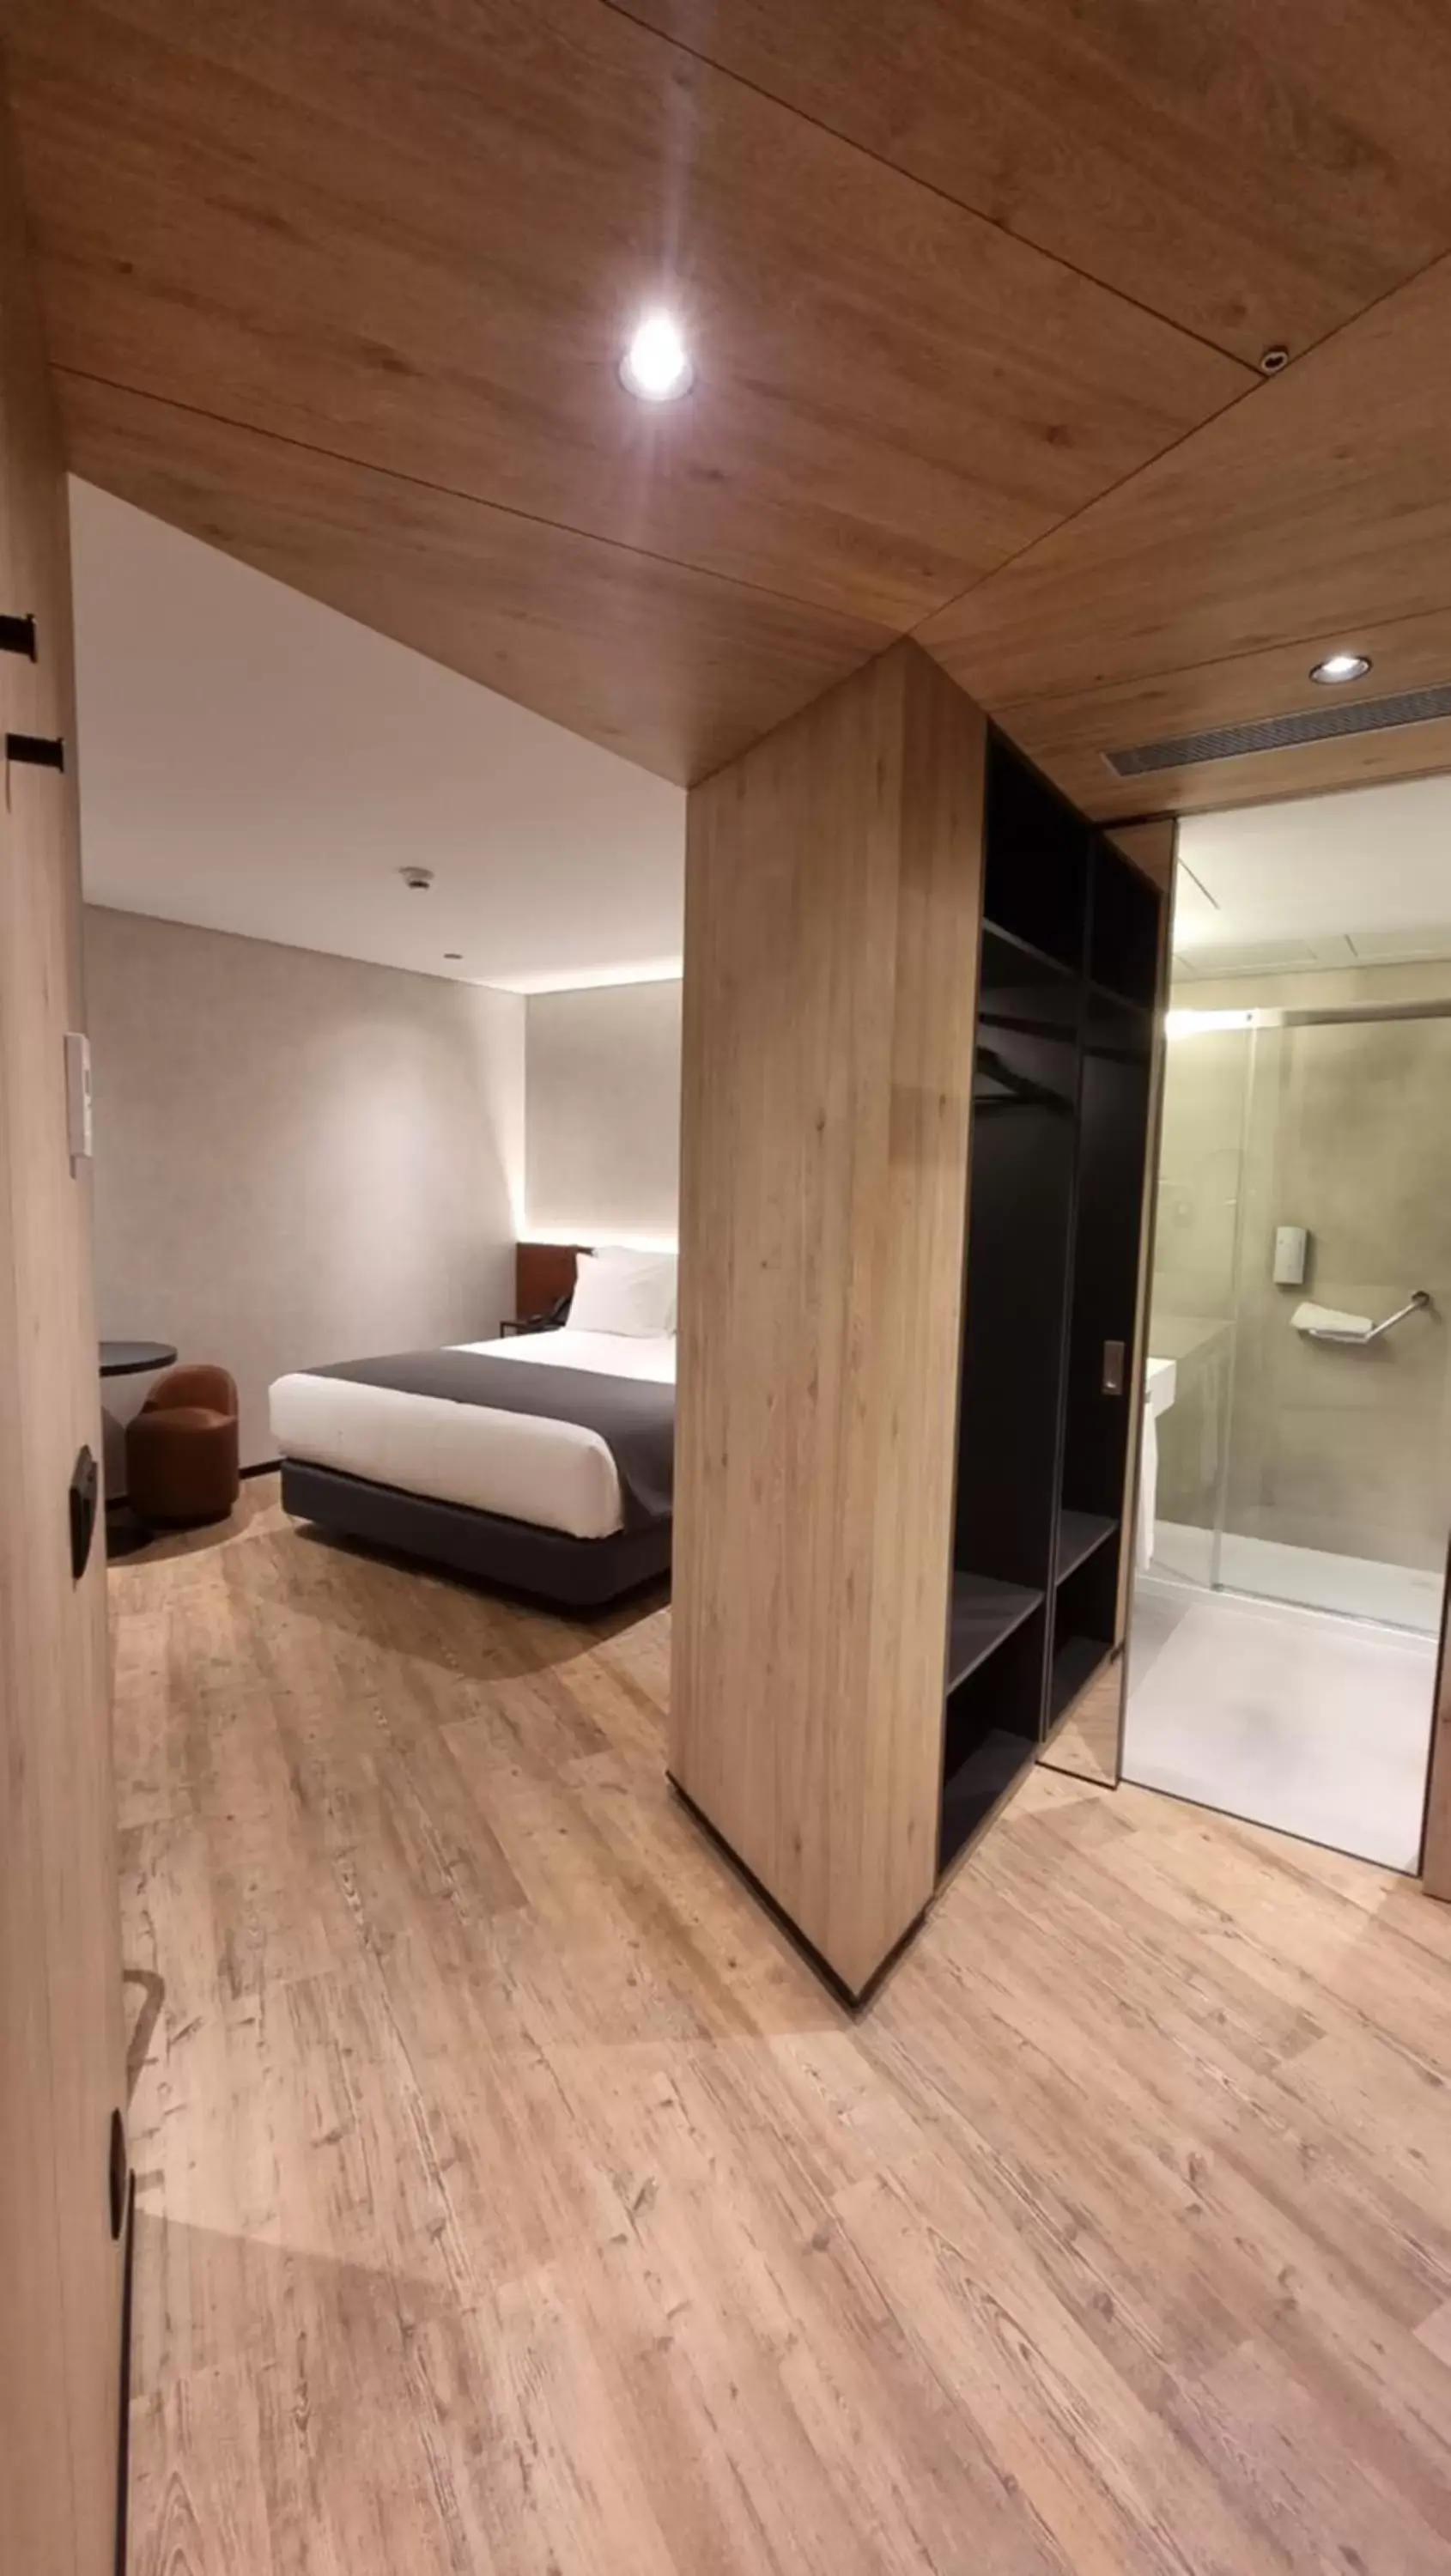 Bedroom, Bathroom in Hotel Principe Avila